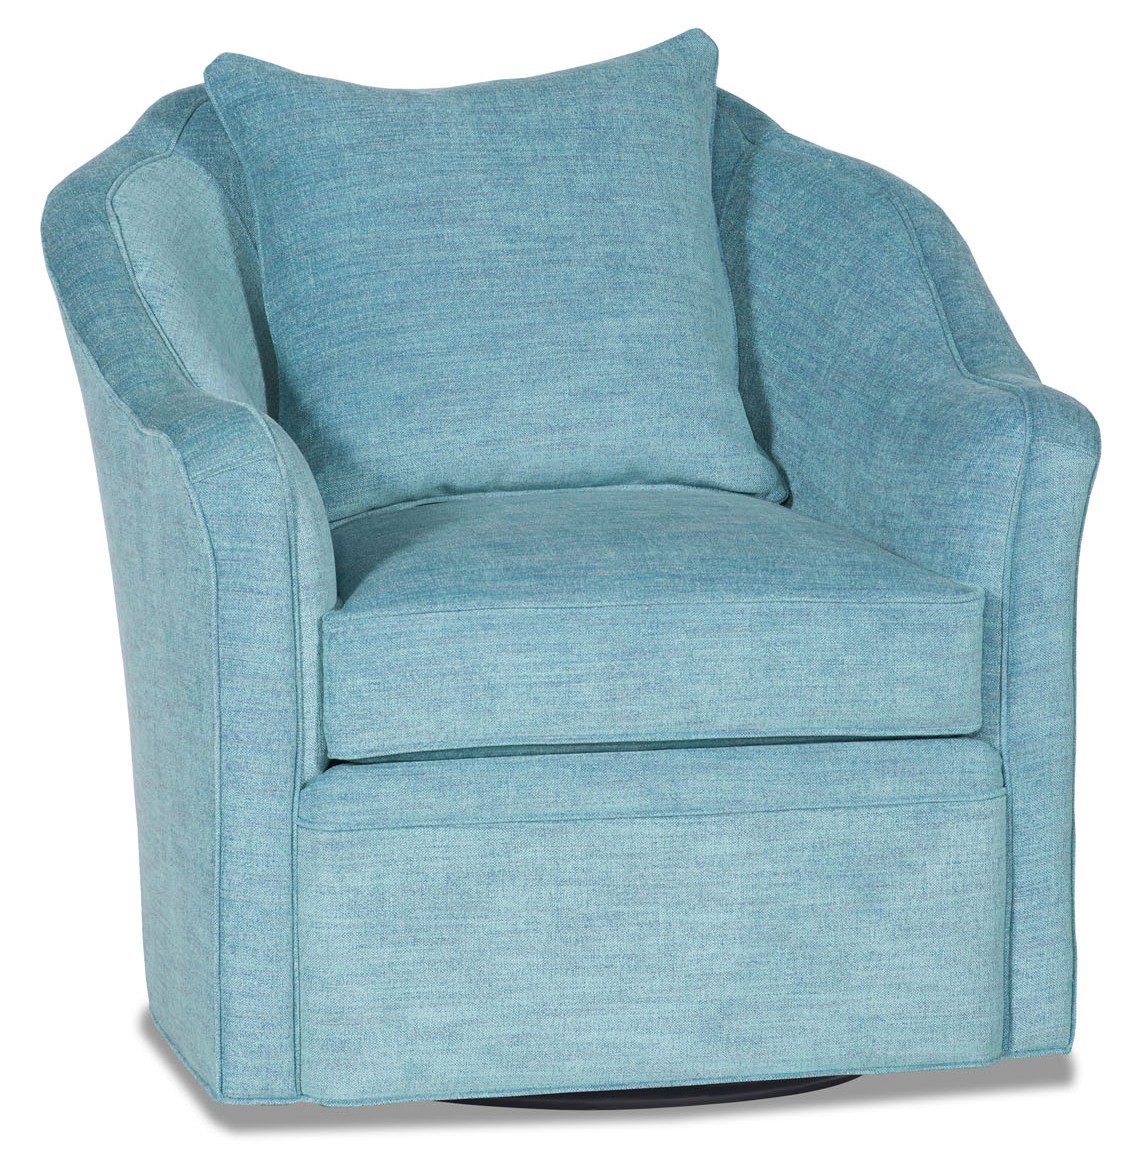 Sky blue barrel style swivel chair